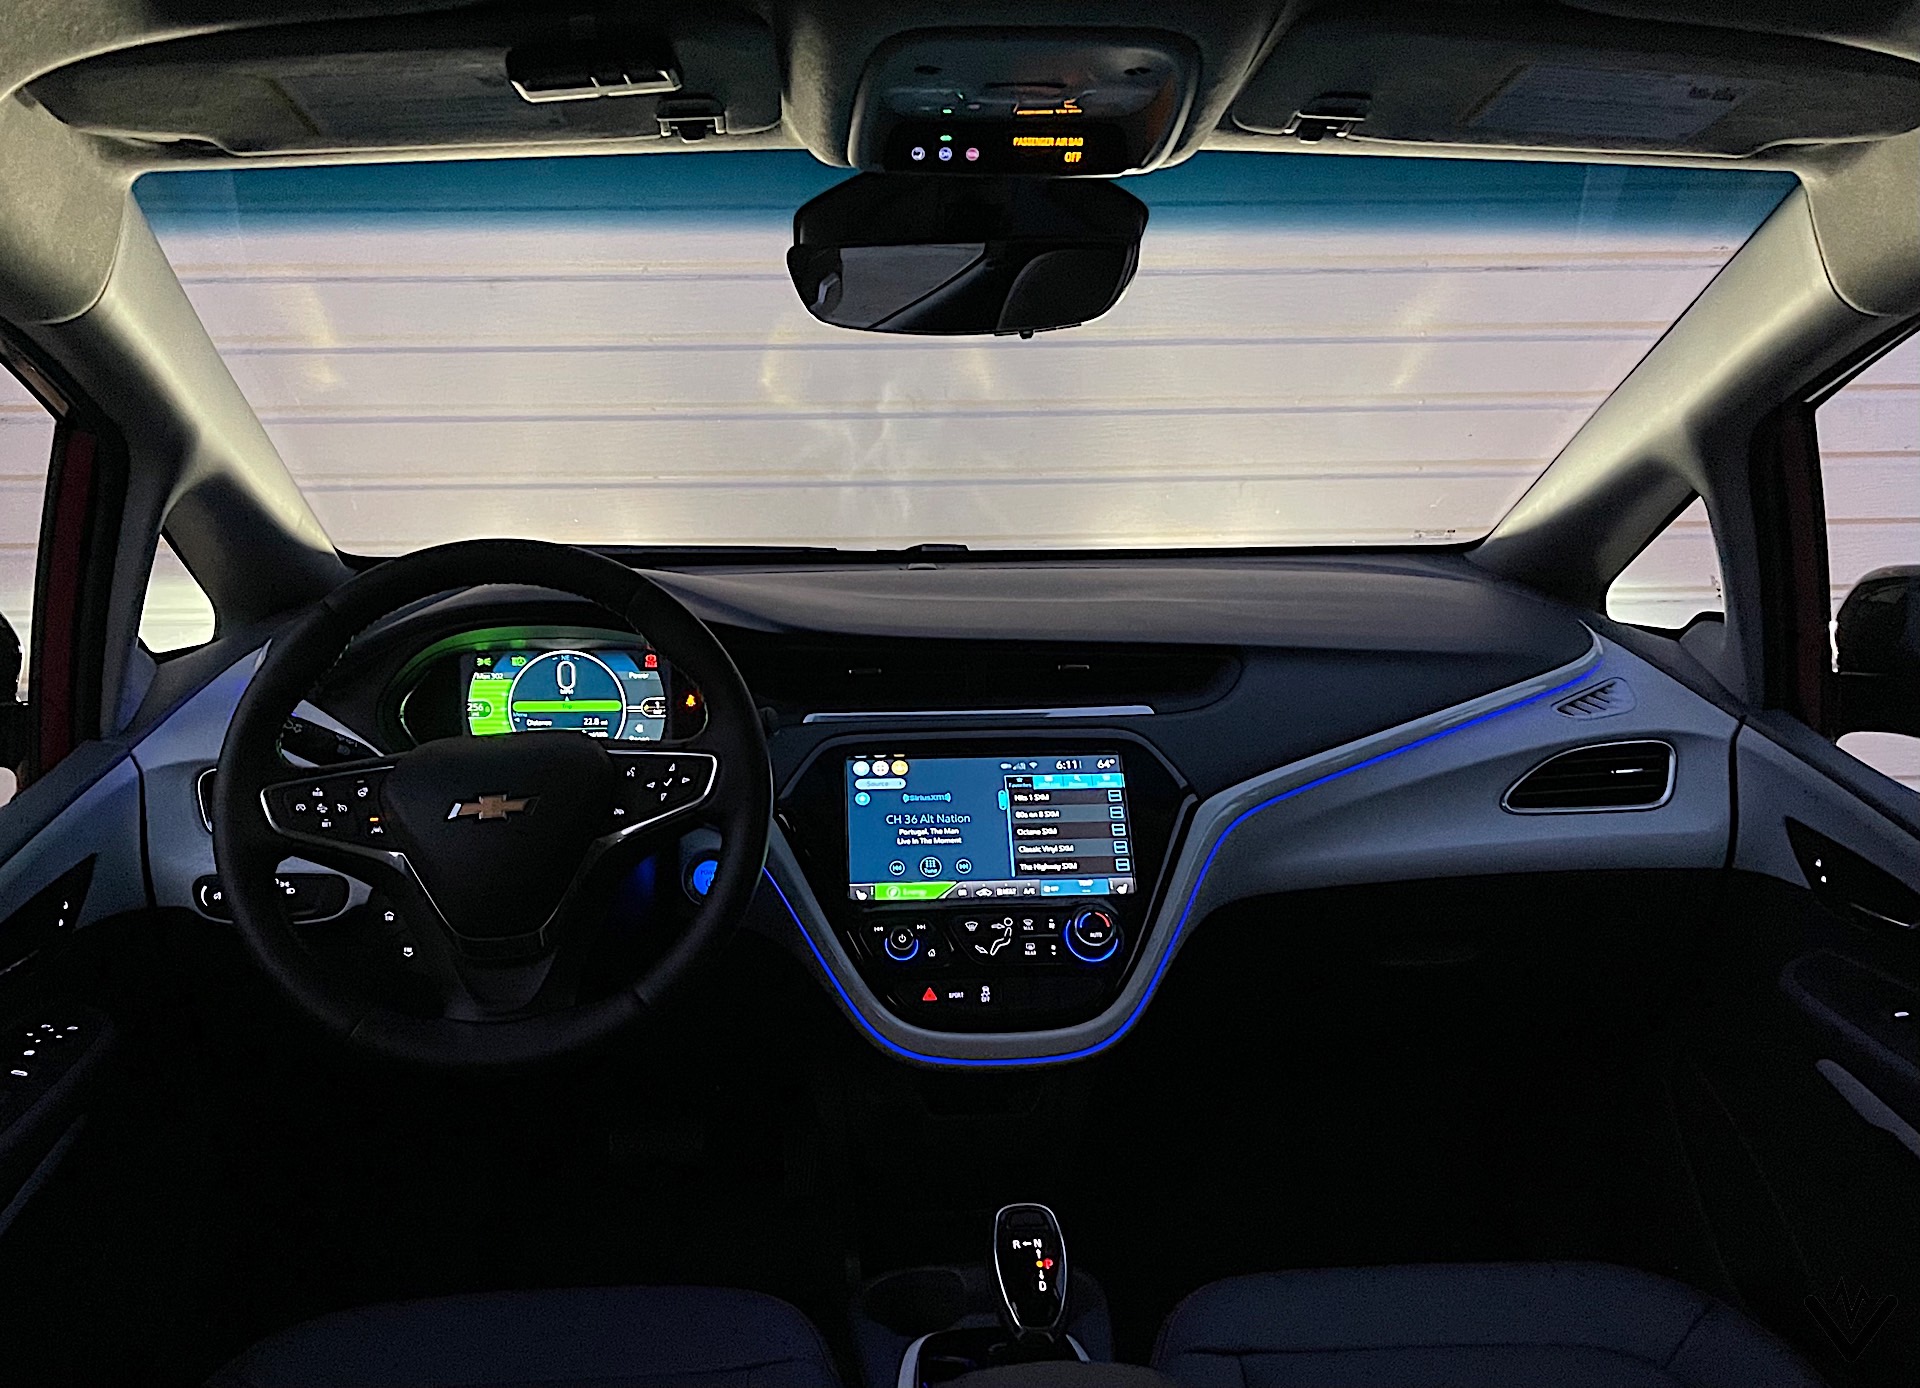 2021 Chevrolet Bolt EV interior 03 1